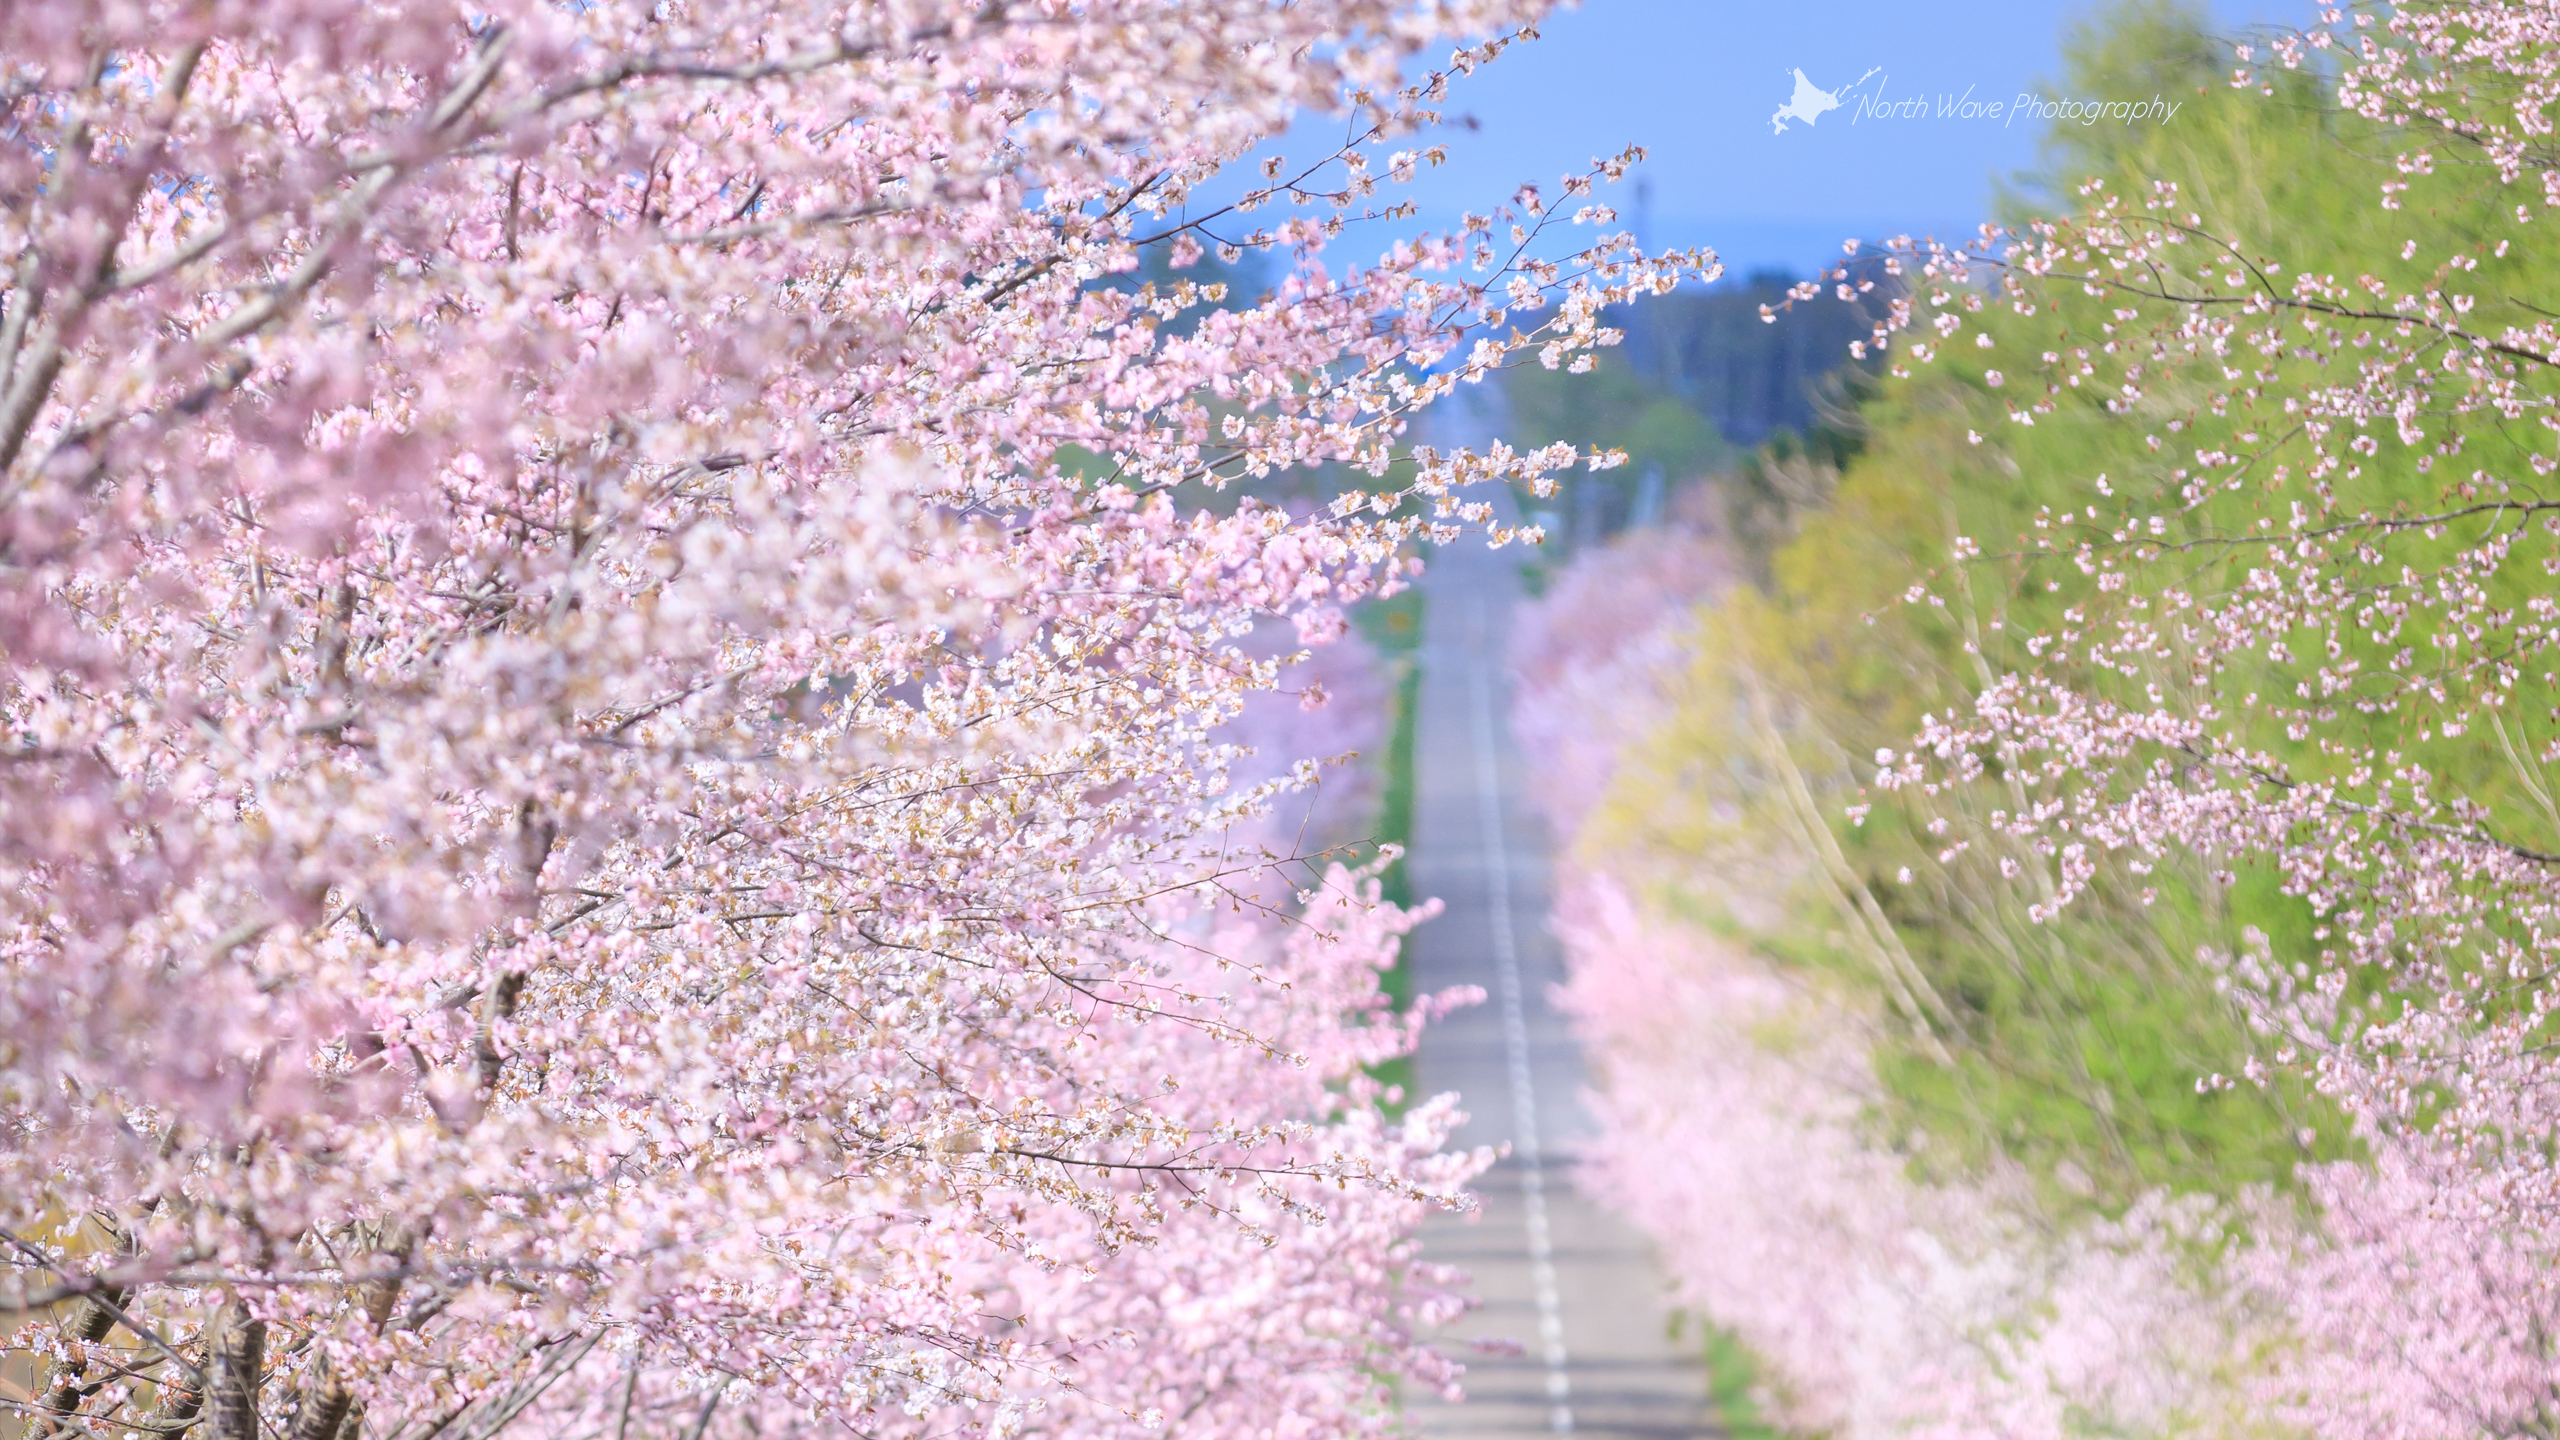 北海道の風景壁紙 サクラ並木と直線道路 No 7 North Wave Photography